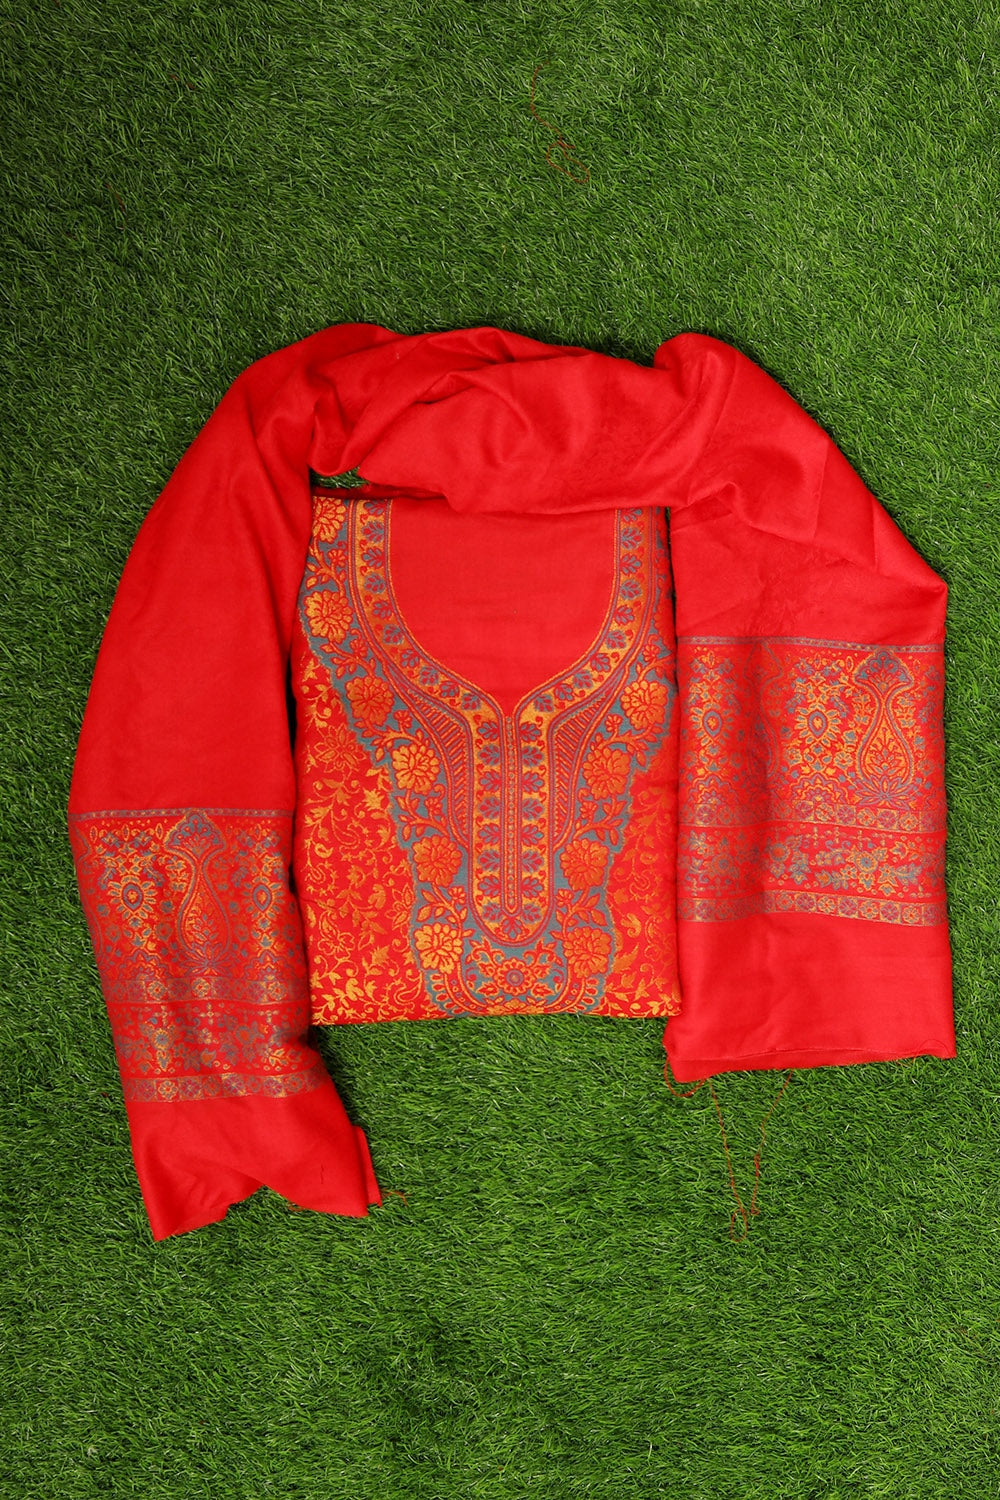 Marvellous Red Colour Cotton Zari Kani Stole Suit With Self